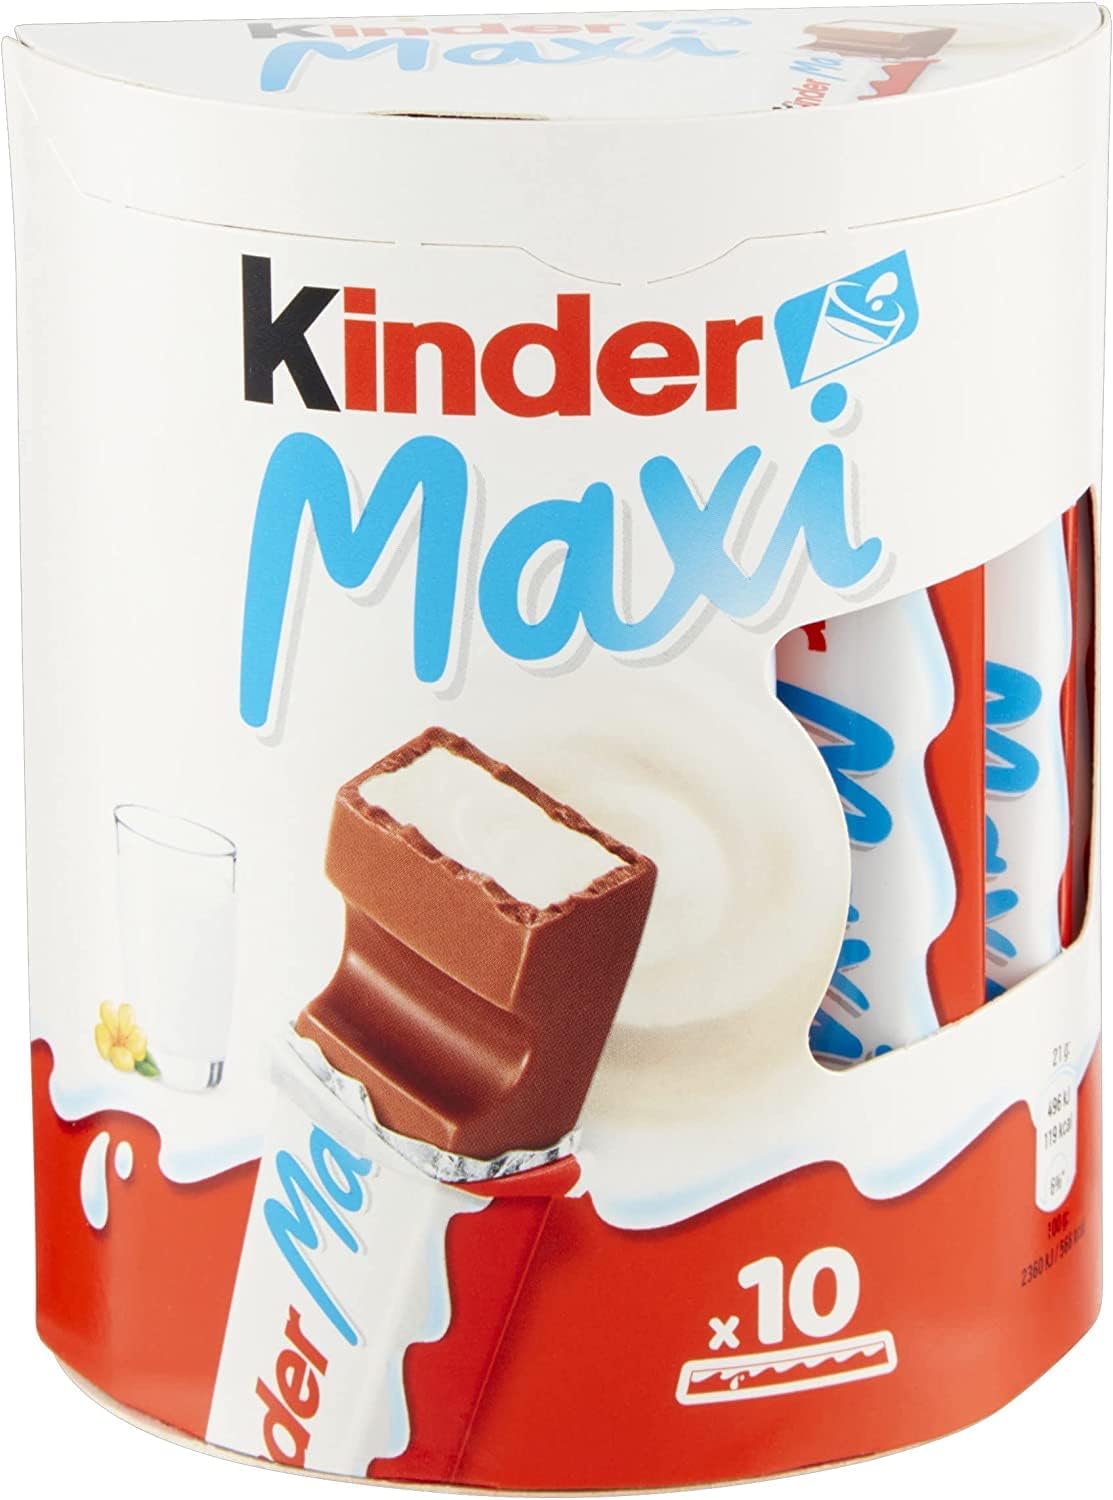 Kinder Maxi, barrette di cioccolato al latte, 10 pezzi da 21 gr